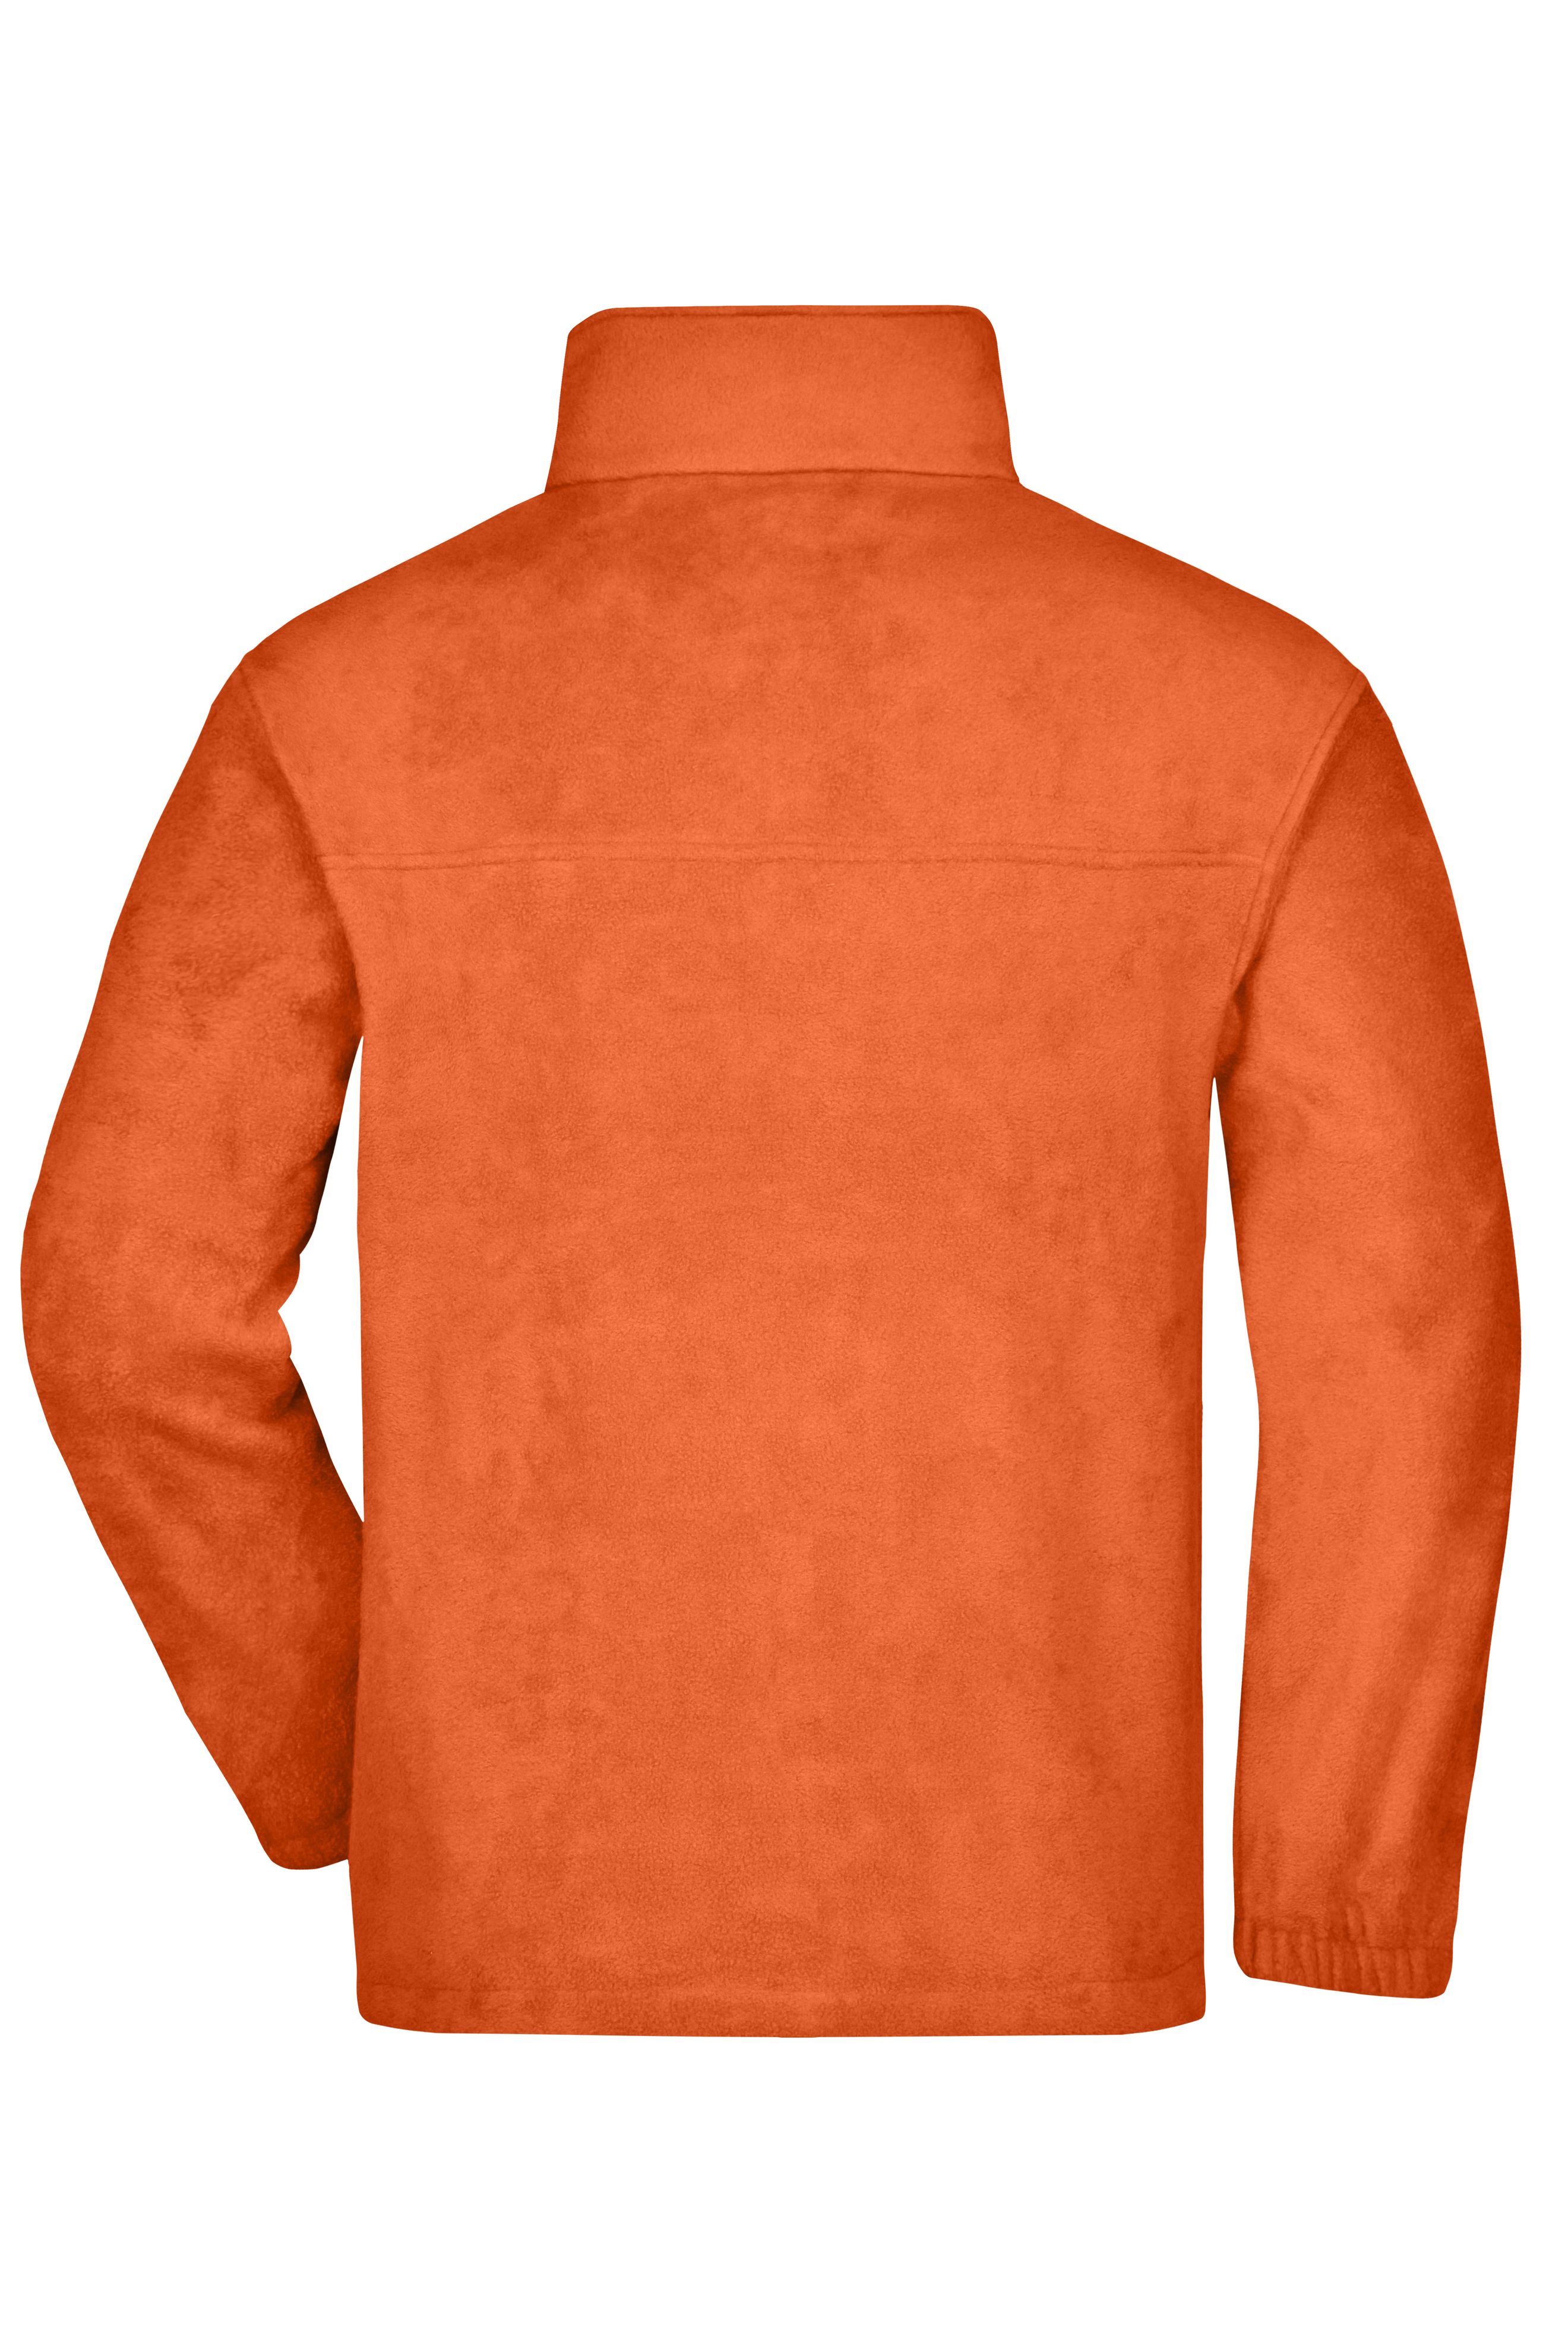 Full-Zip Fleece JN044 Jacke in schwerer Fleece-Qualität